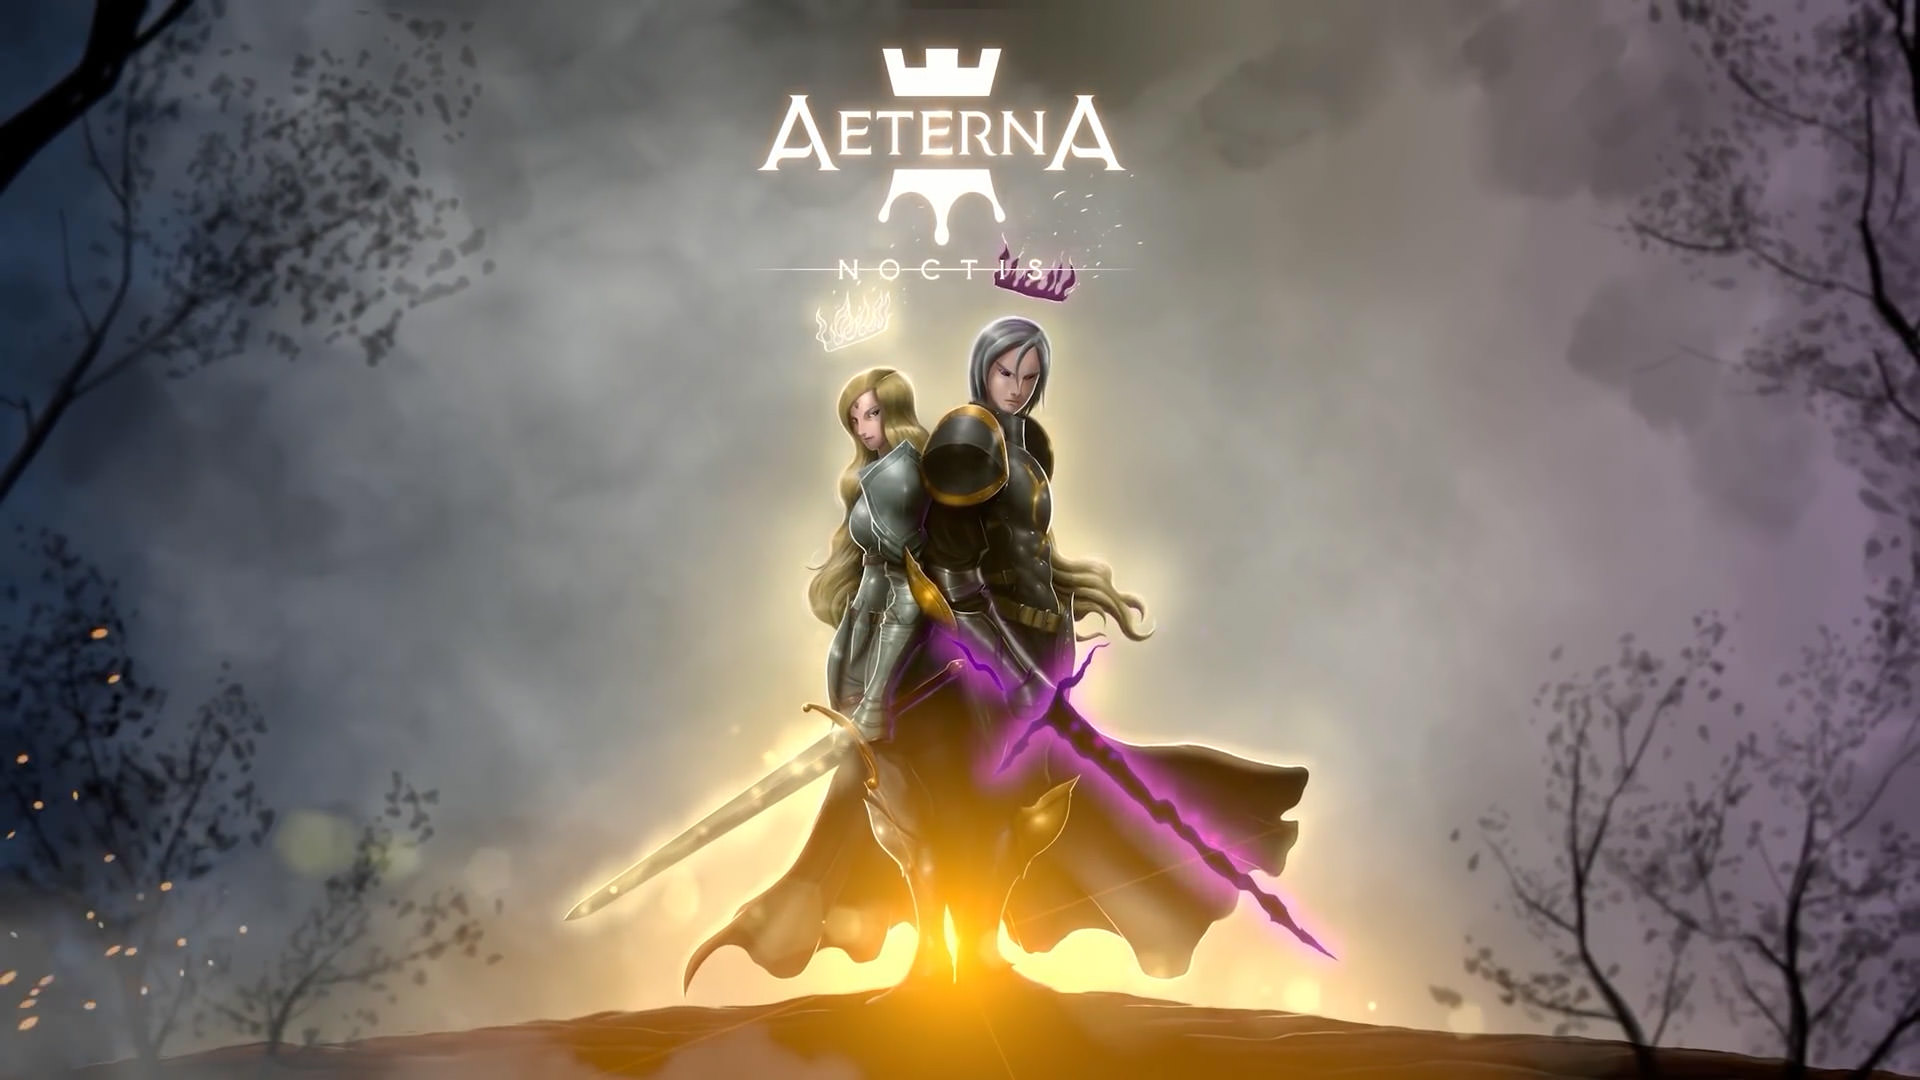 انتشار تریلر جدید بازی Aeterna Noctis با محوریت نمایش گیم پلی